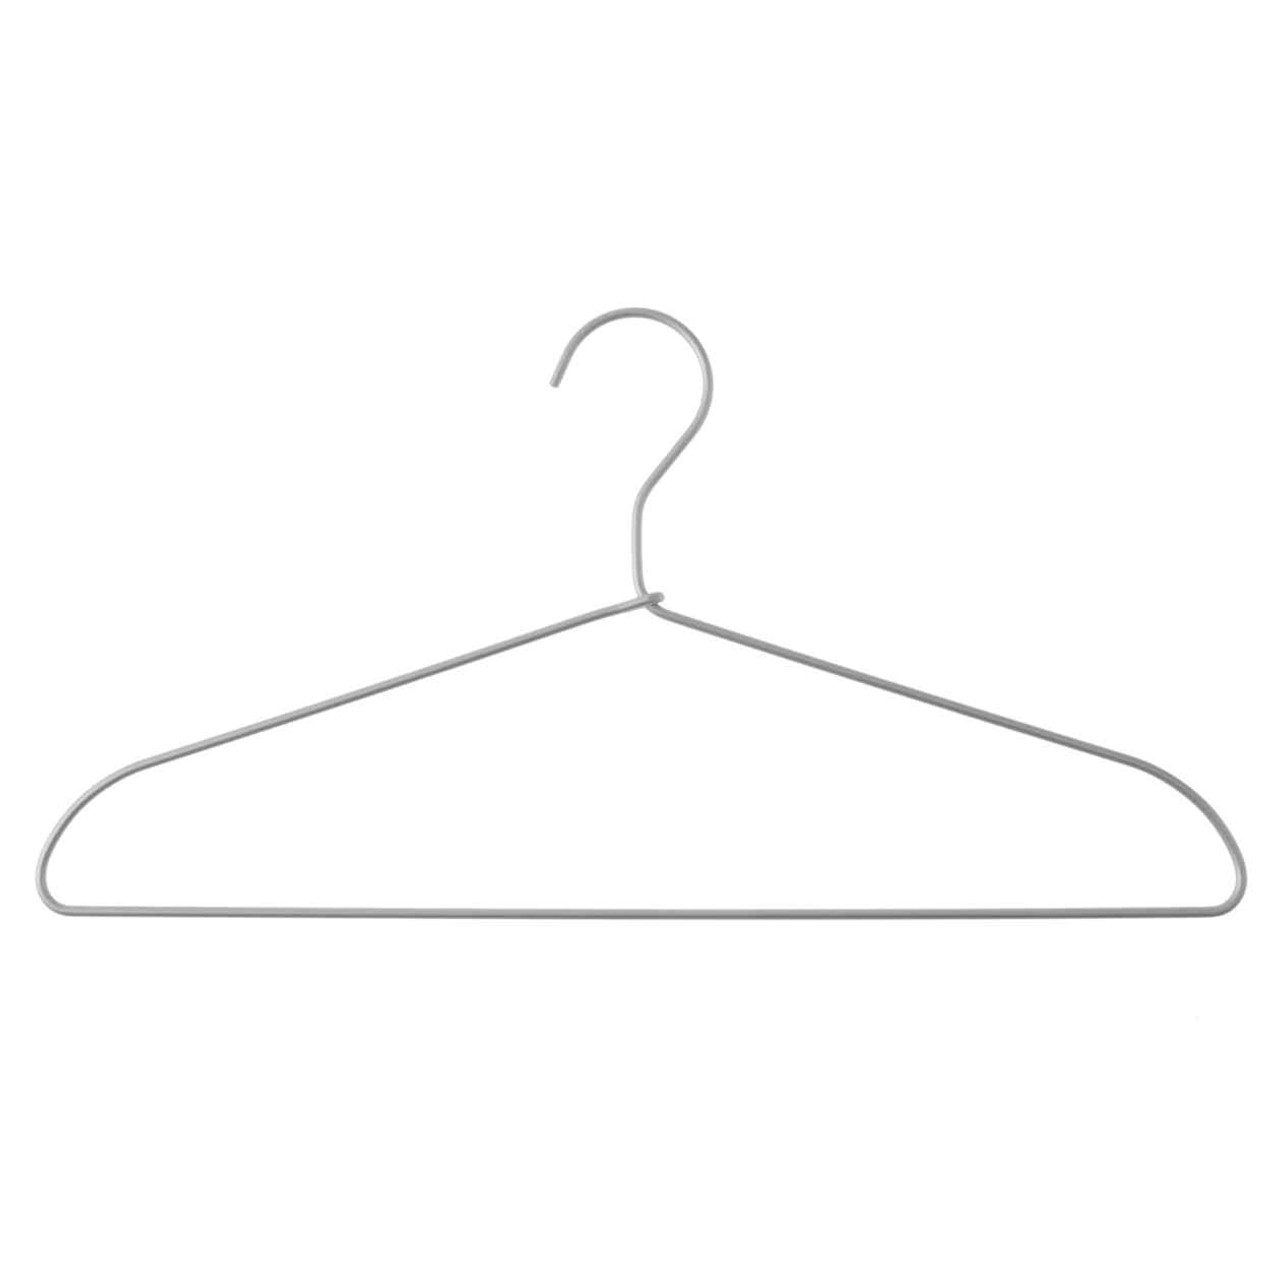 Aluminium Clothes Hangers ‐ Pack of 3 | MUJI